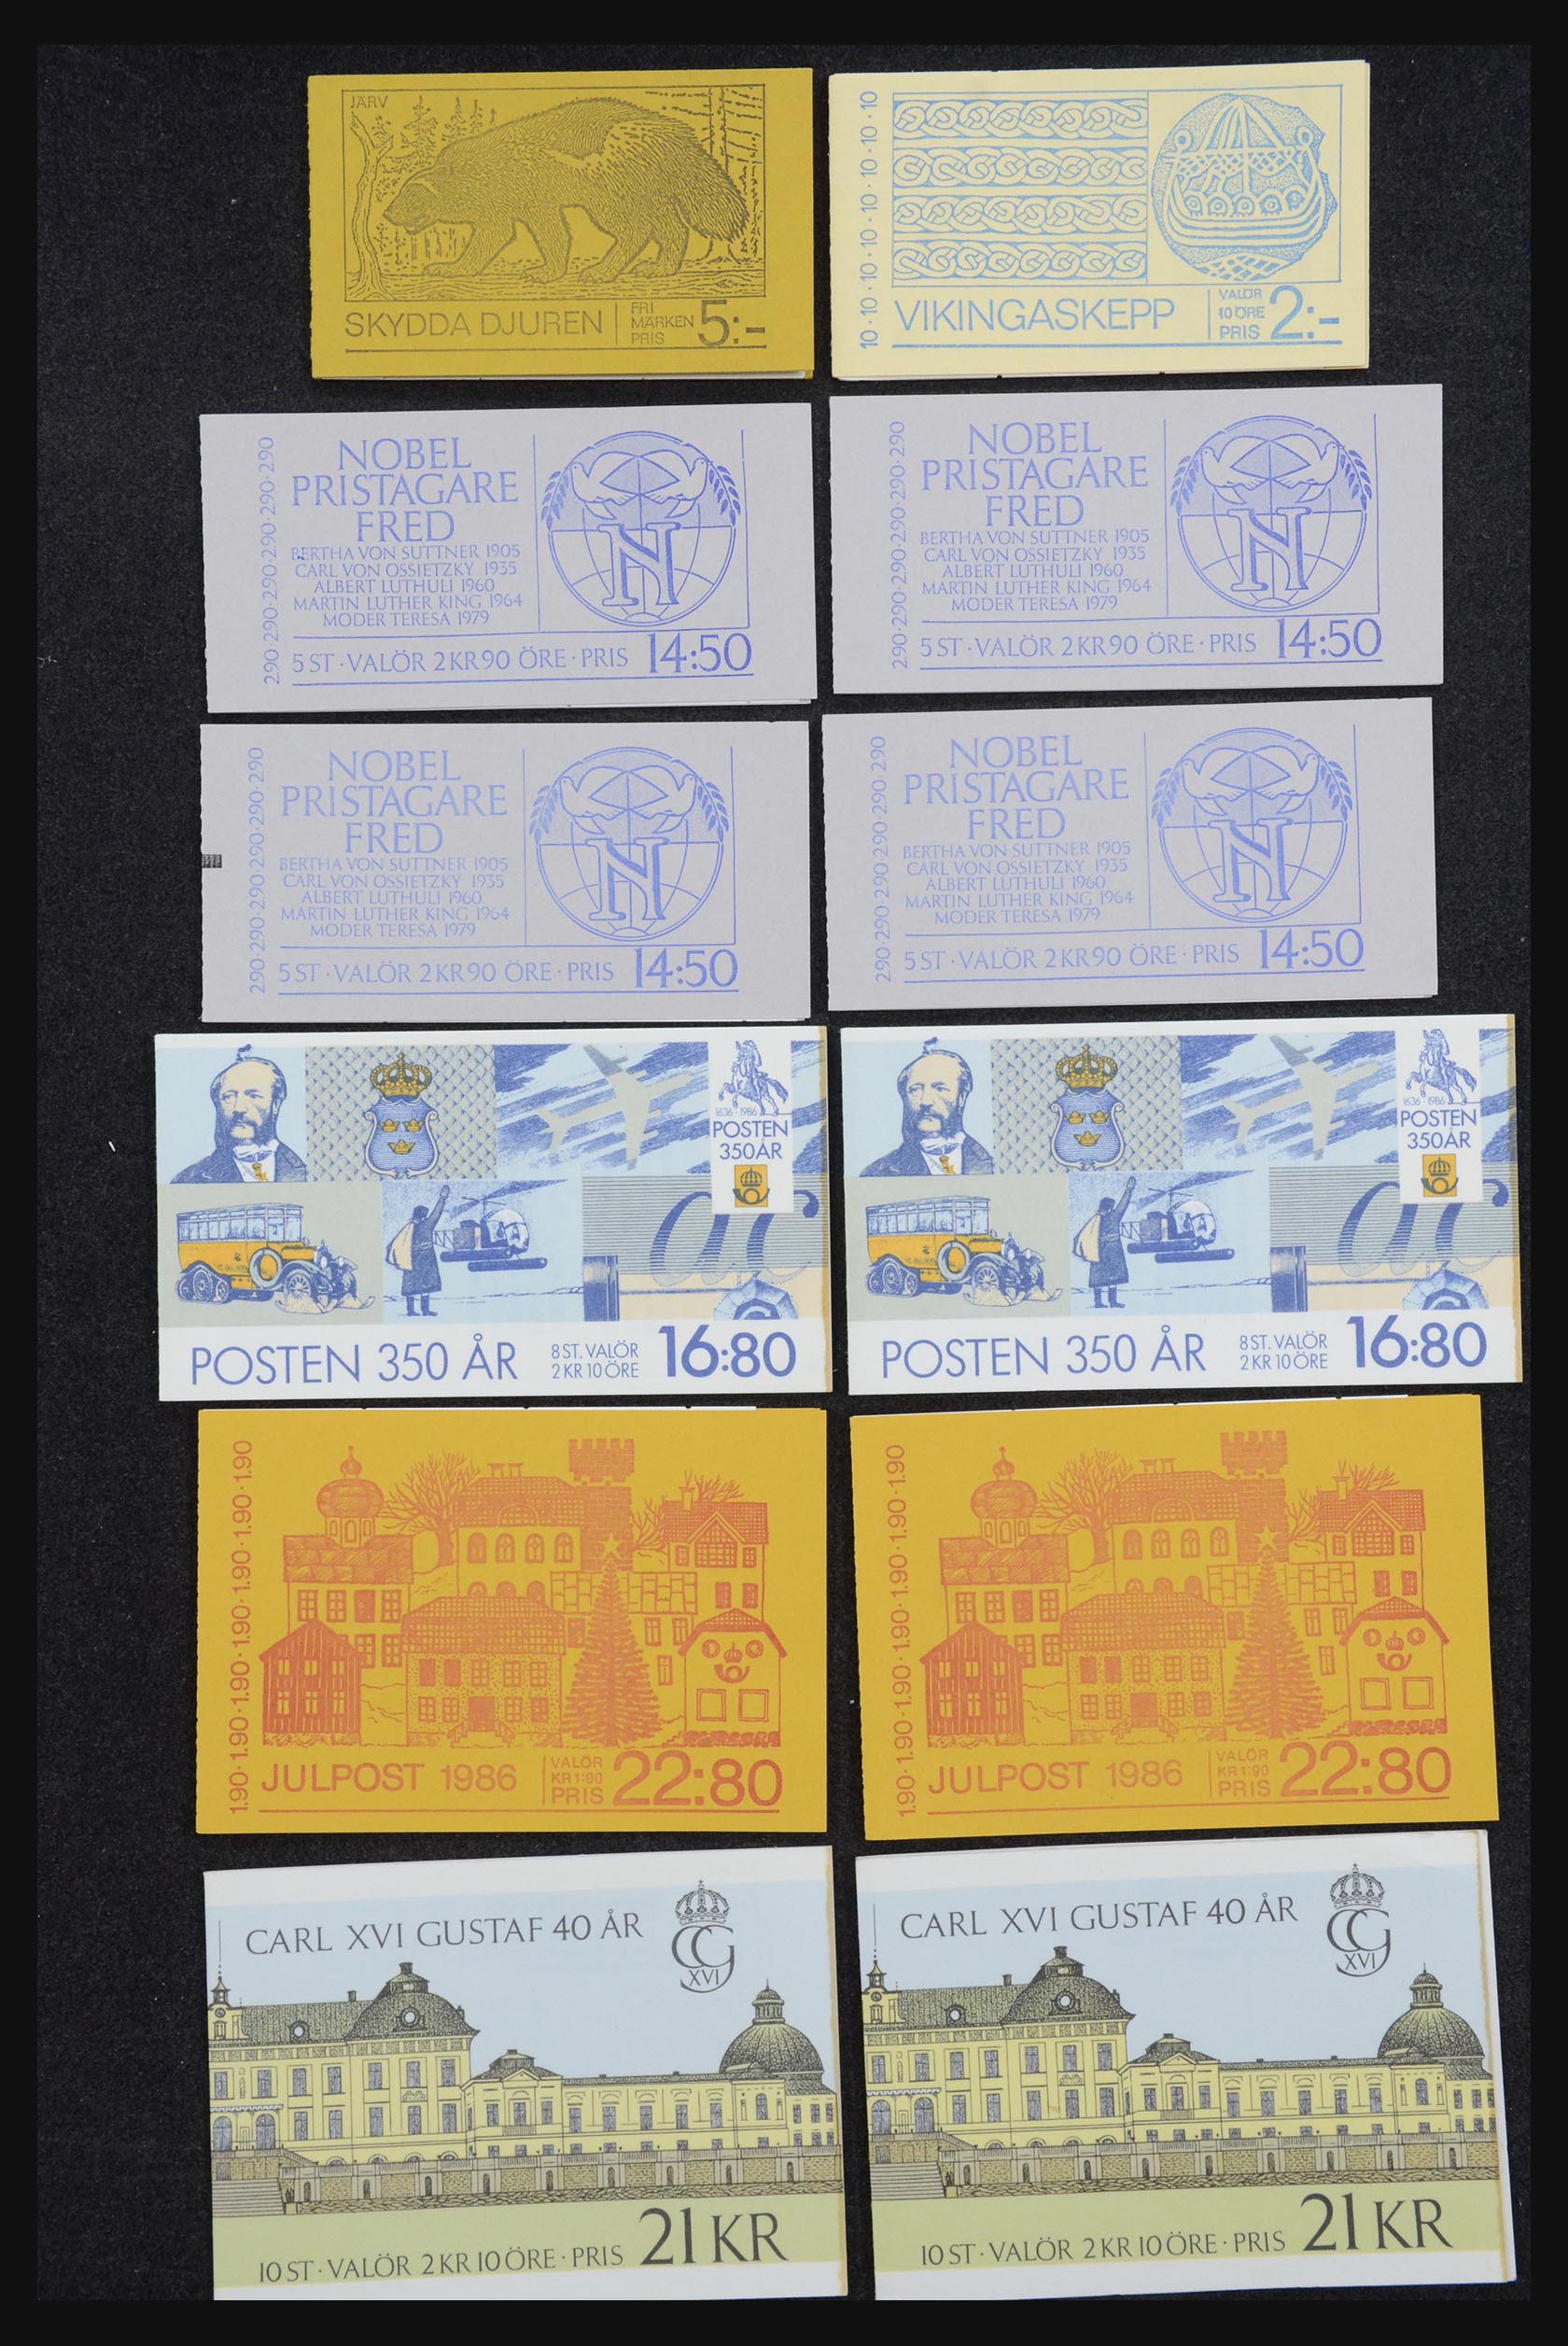 32026 029 - 32026 Sweden stampbooklets 1949-1990.